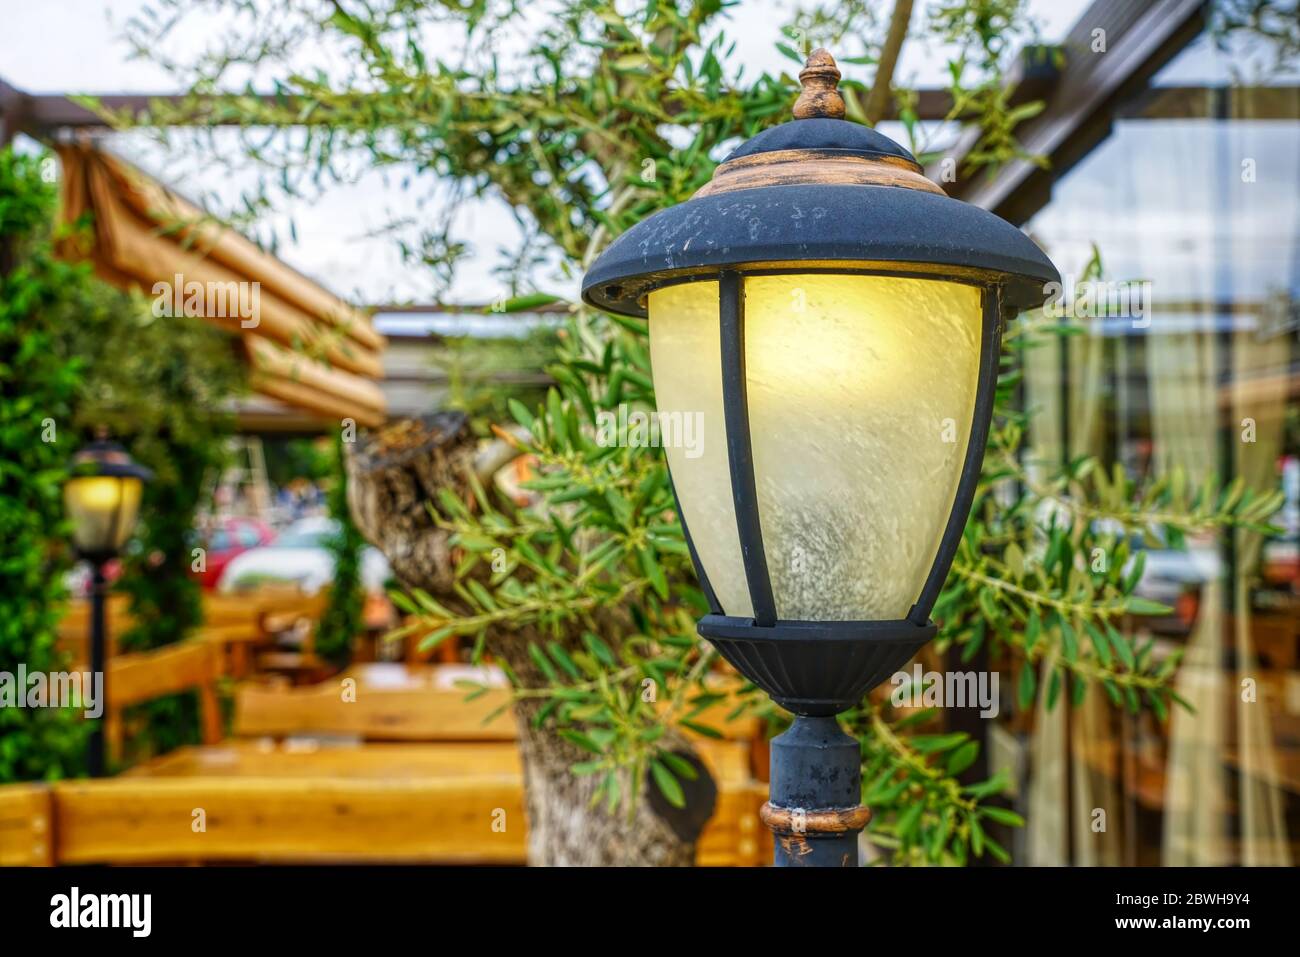 Gusseiserne Lampe in einem idyllischen Garten mit Holzbänken und Tischen Stockfoto